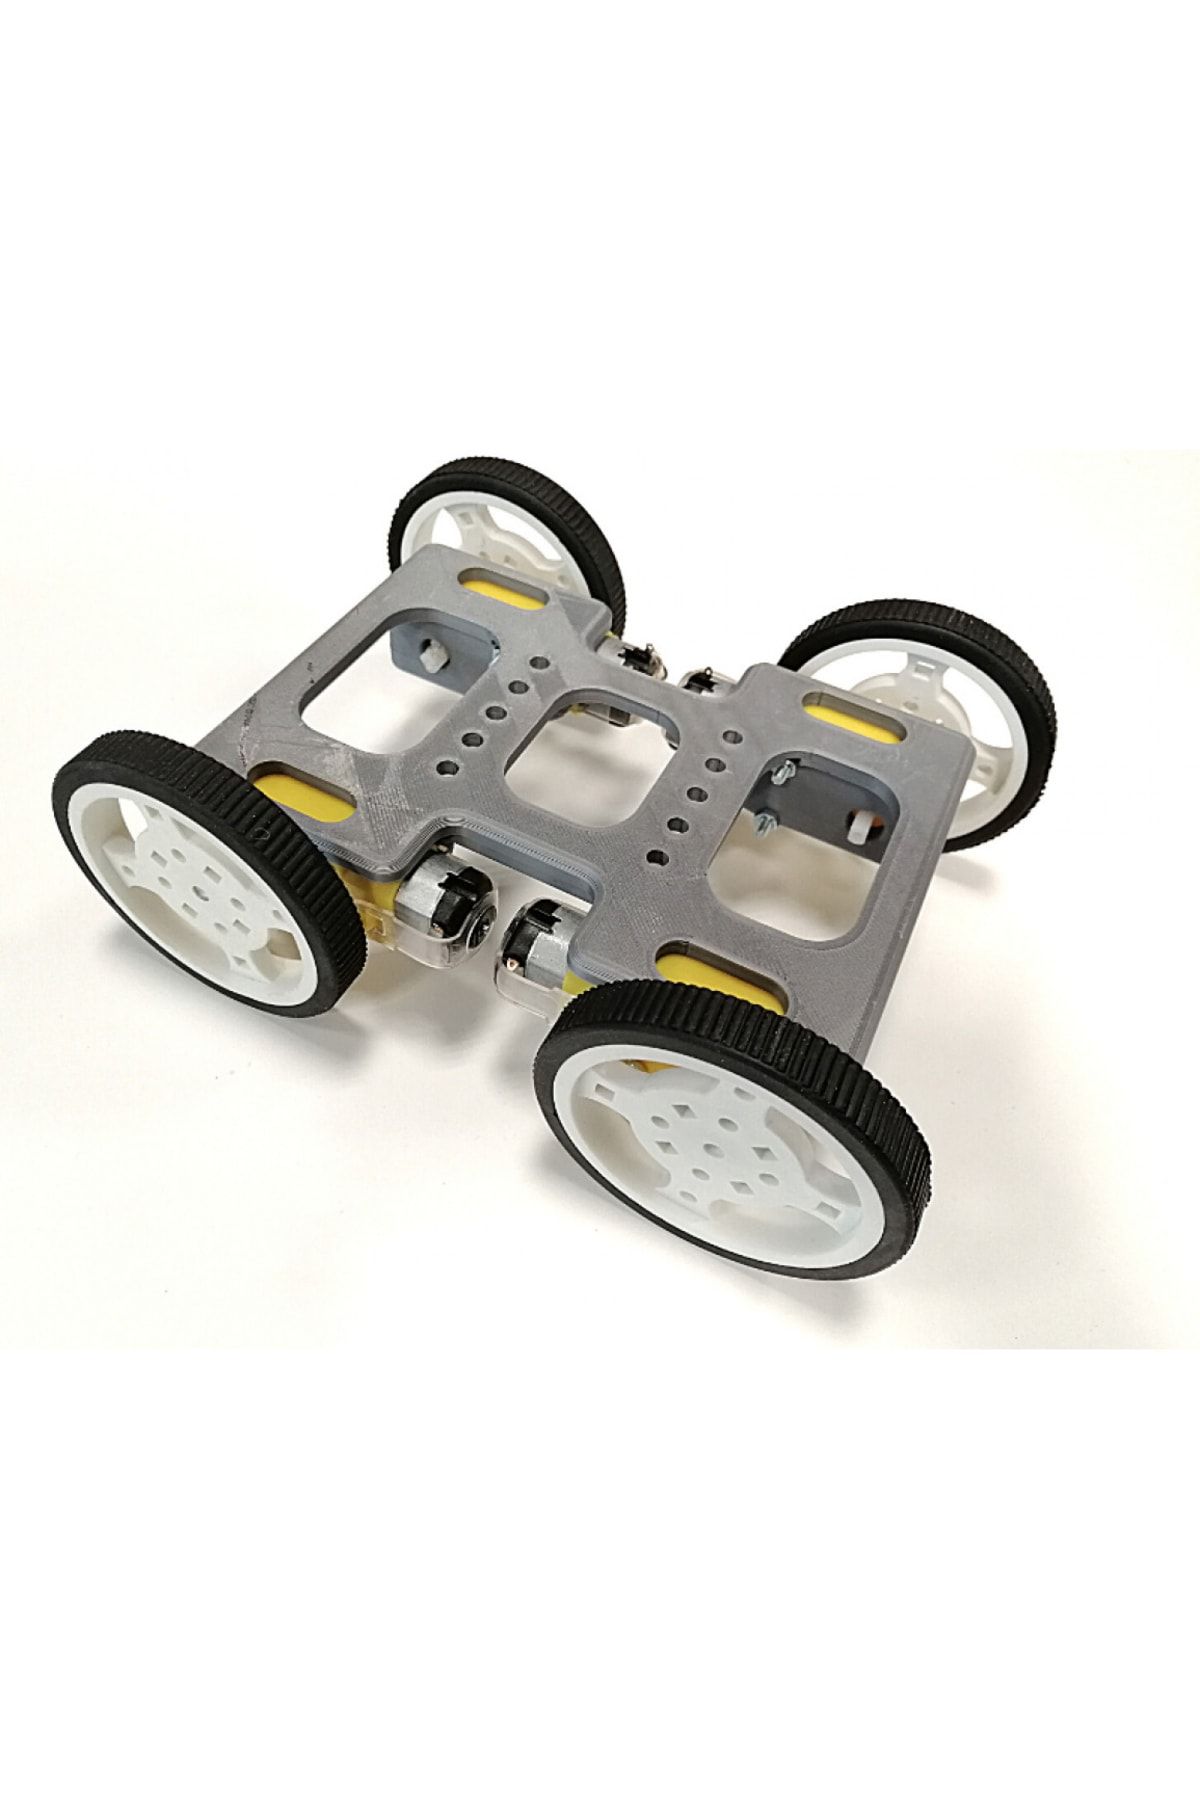 Arduino Projeleri 4wd Robot Şase Platformu Sadece Pla Baskı Gövde (MOTORSUZ)